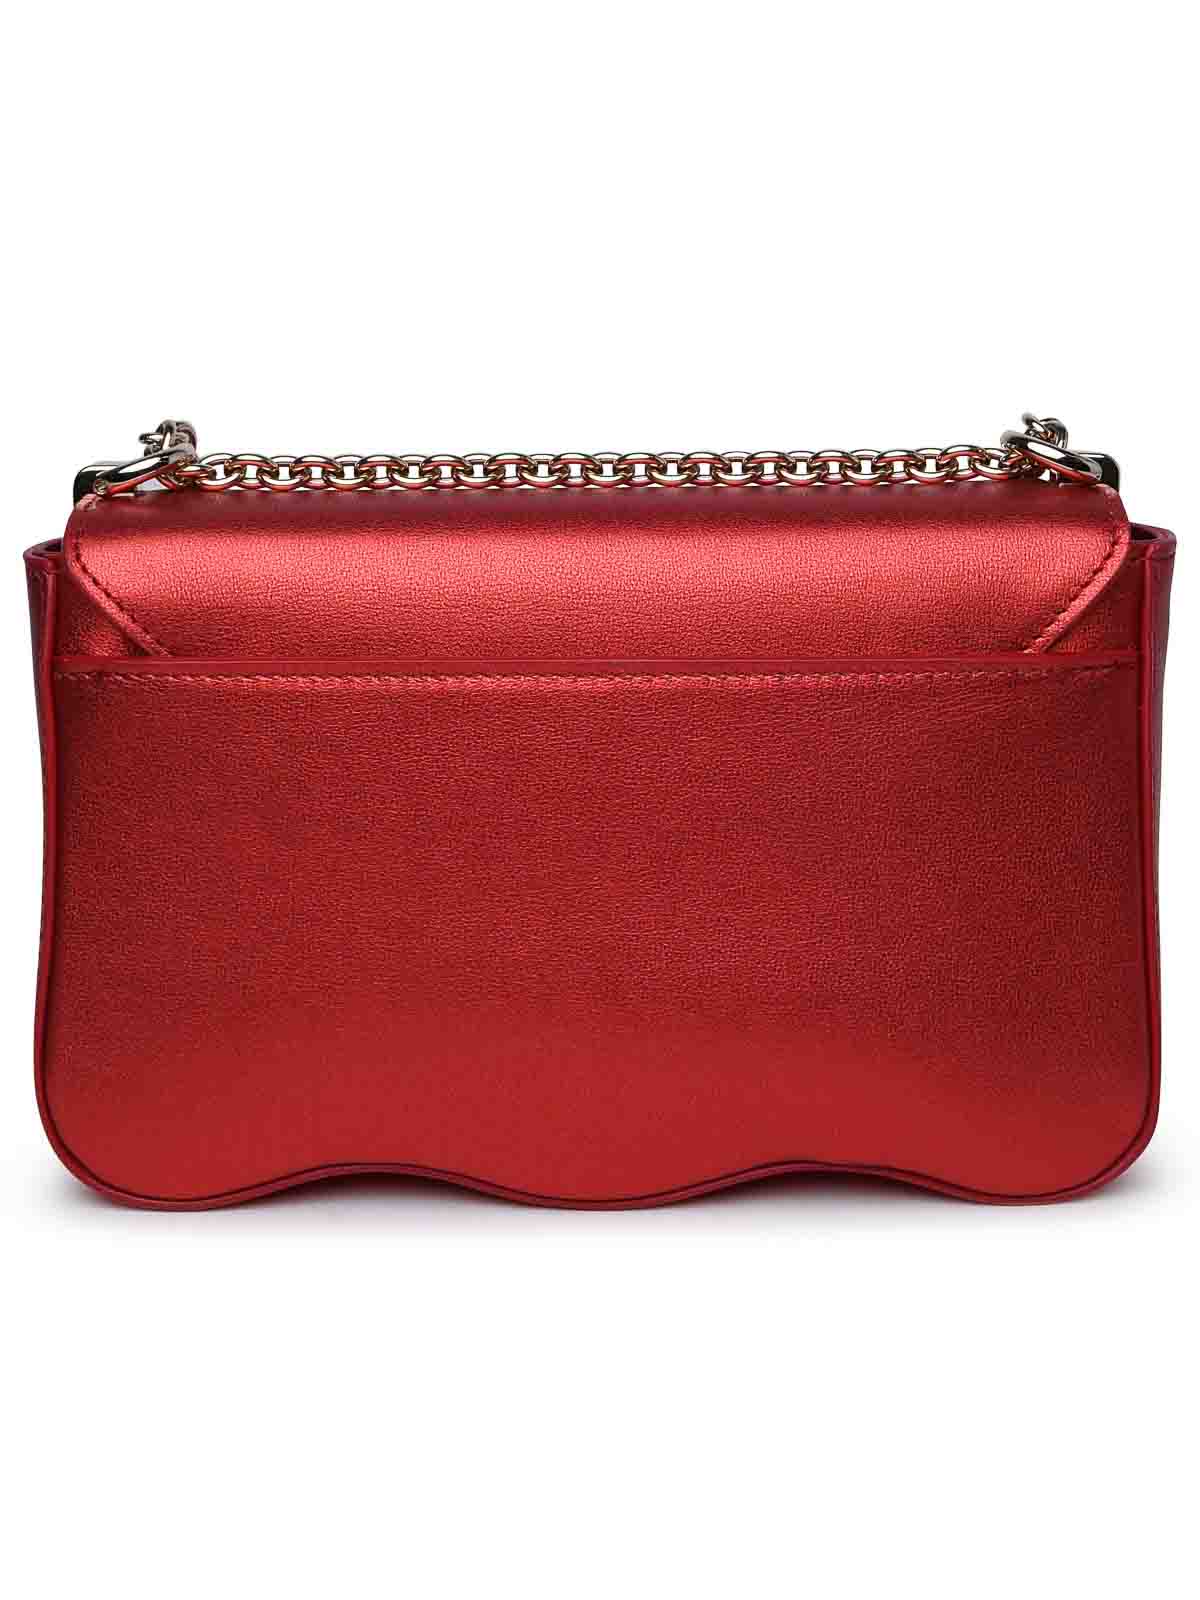 Shop Furla Red Leather Bag